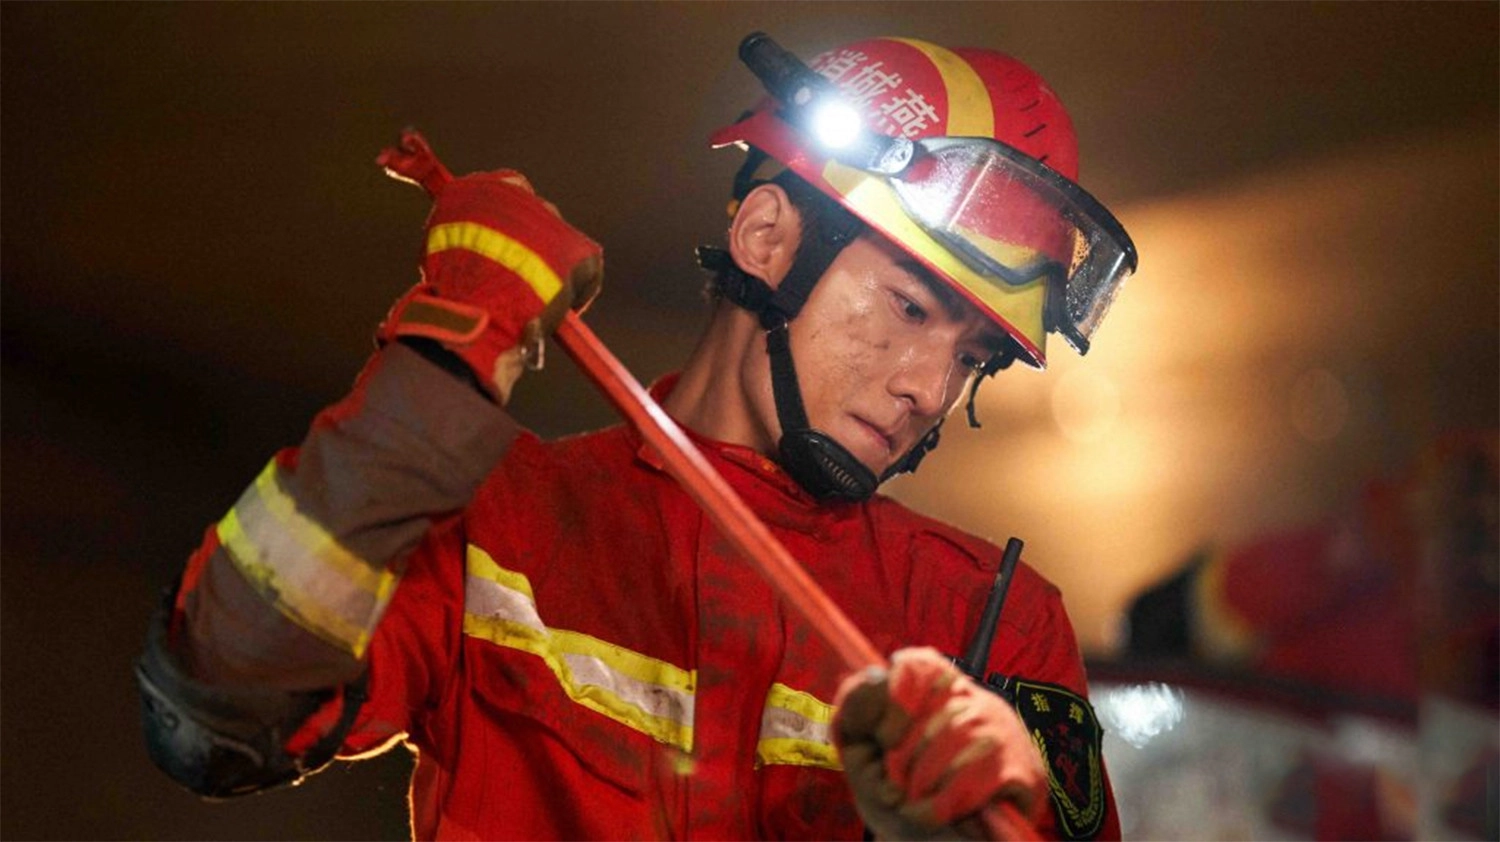 Những tình tiết căng thẳng khi đội cứu hỏa của nhân vật nam chính liên tục đối mặt với nguy hiểm để cứu người